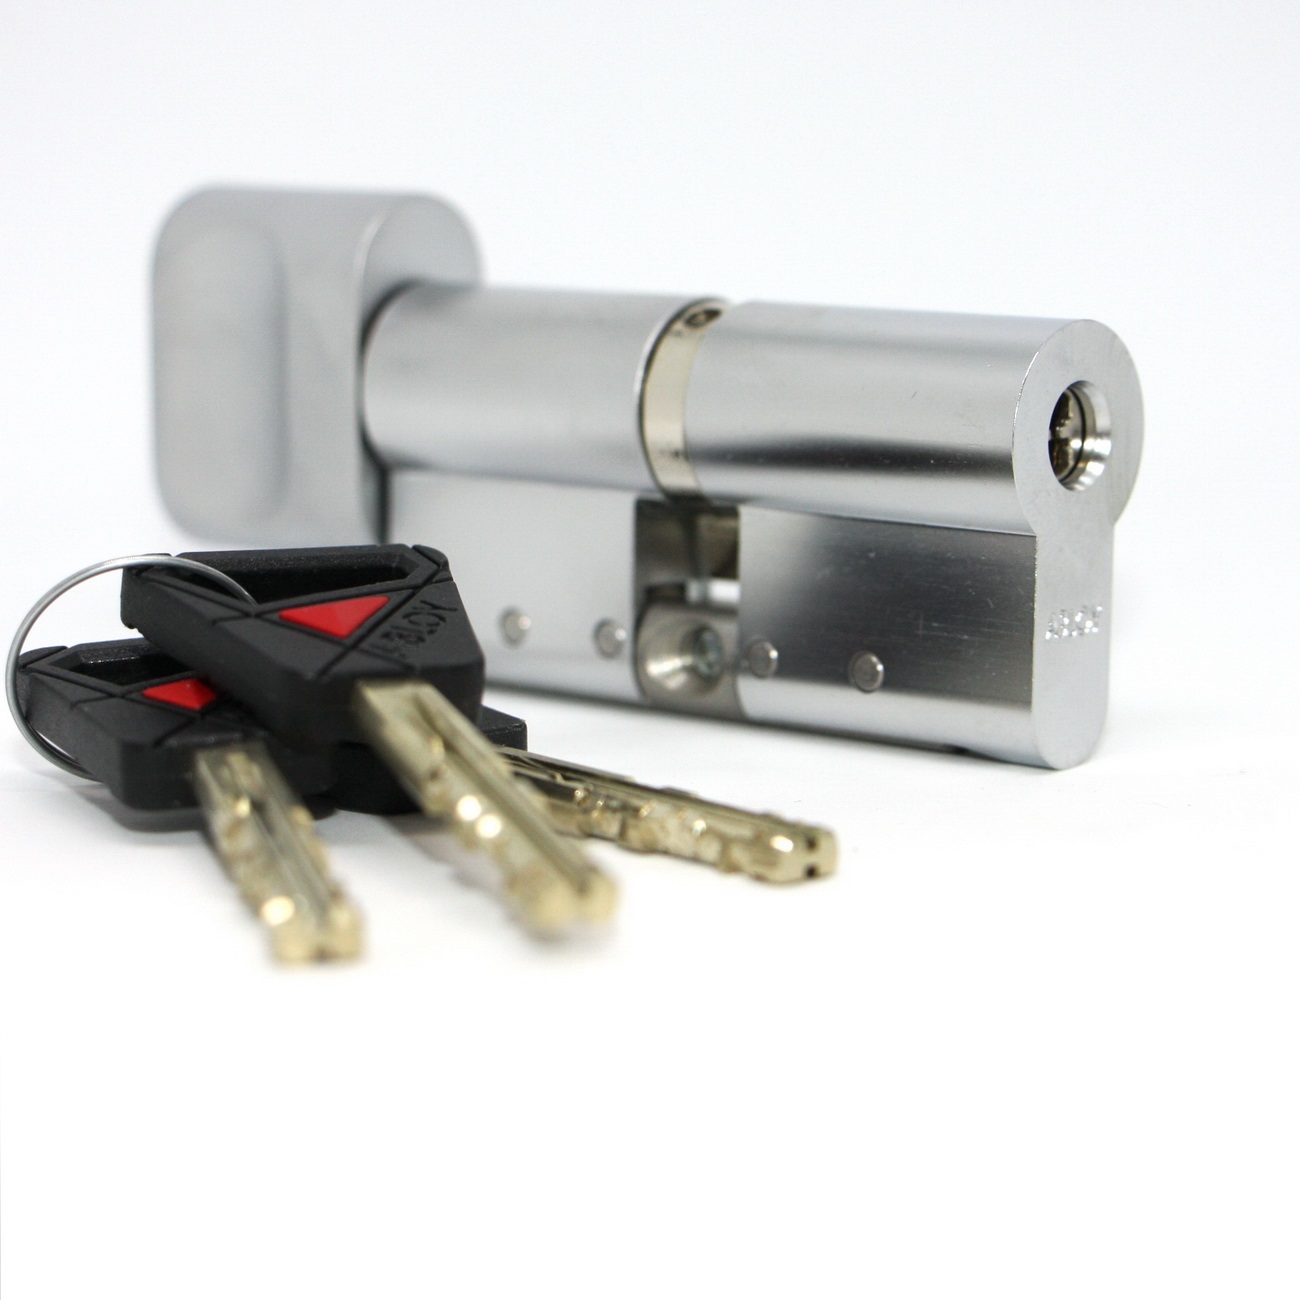 CY 323 U  chrome / цилиндр ключ+поворотная кнопка от производителя Аблой